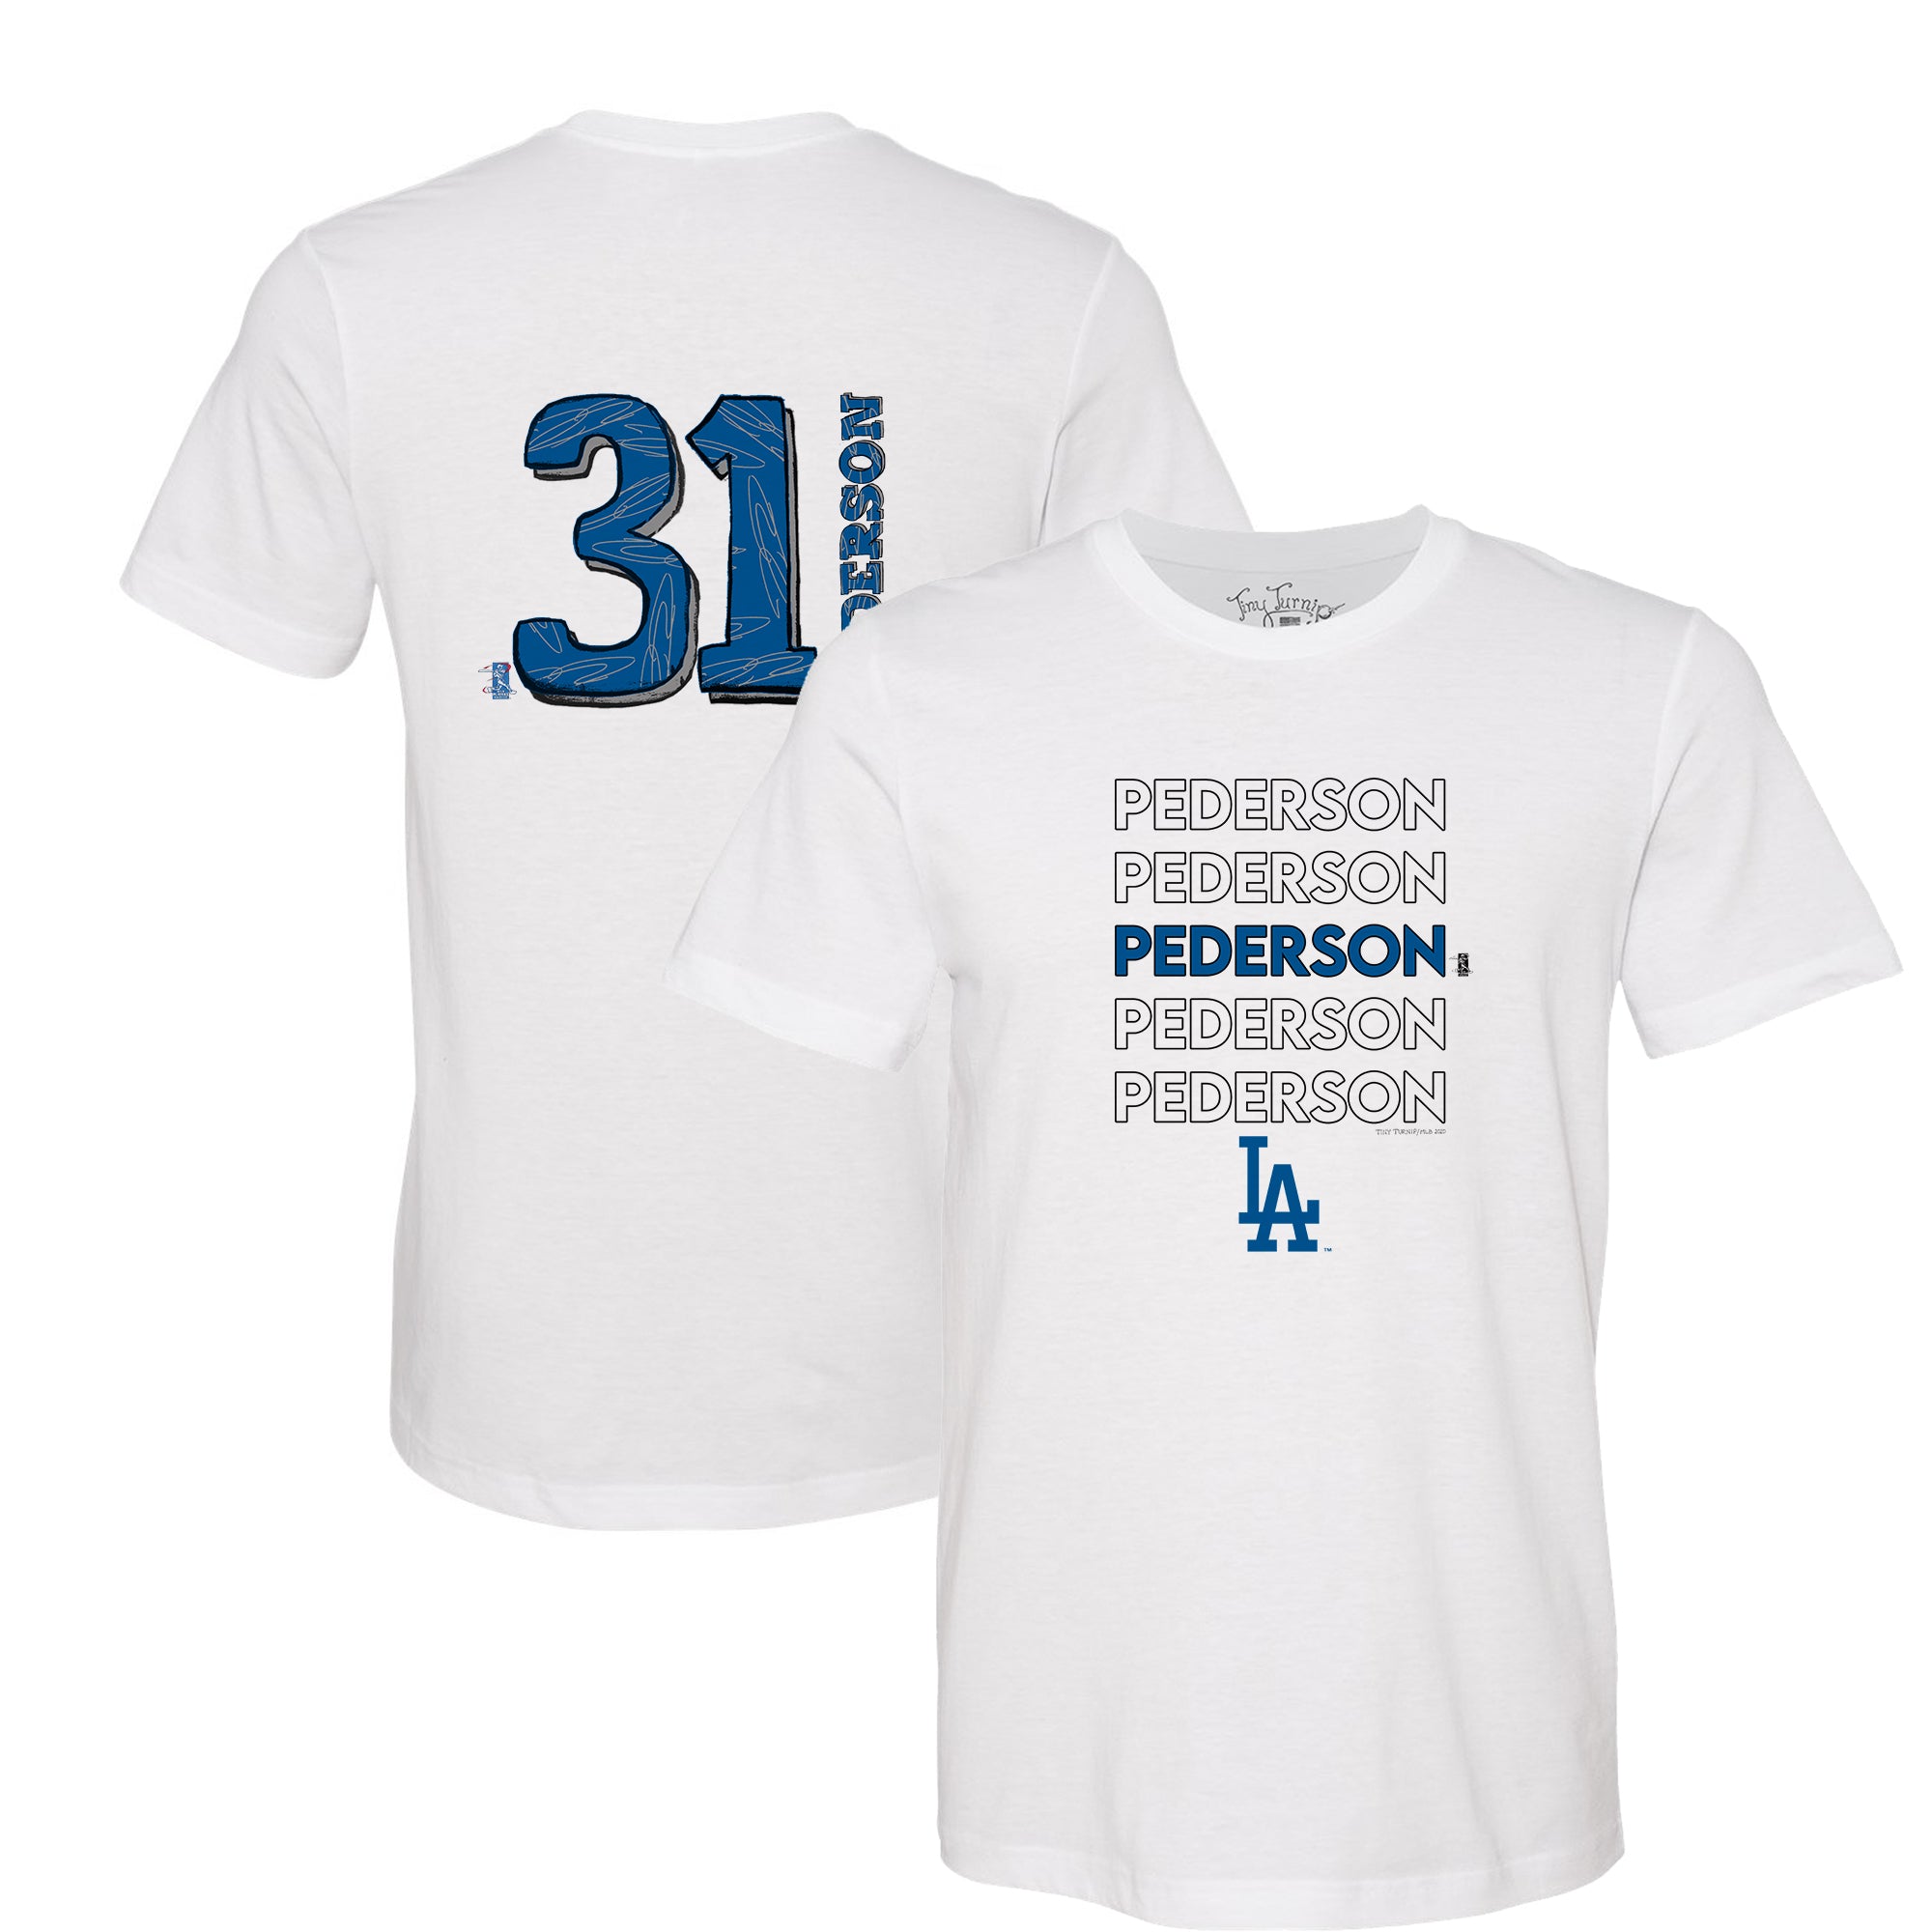 Joc Pederson Name & Number T-Shirt - Black - Tshirtsedge